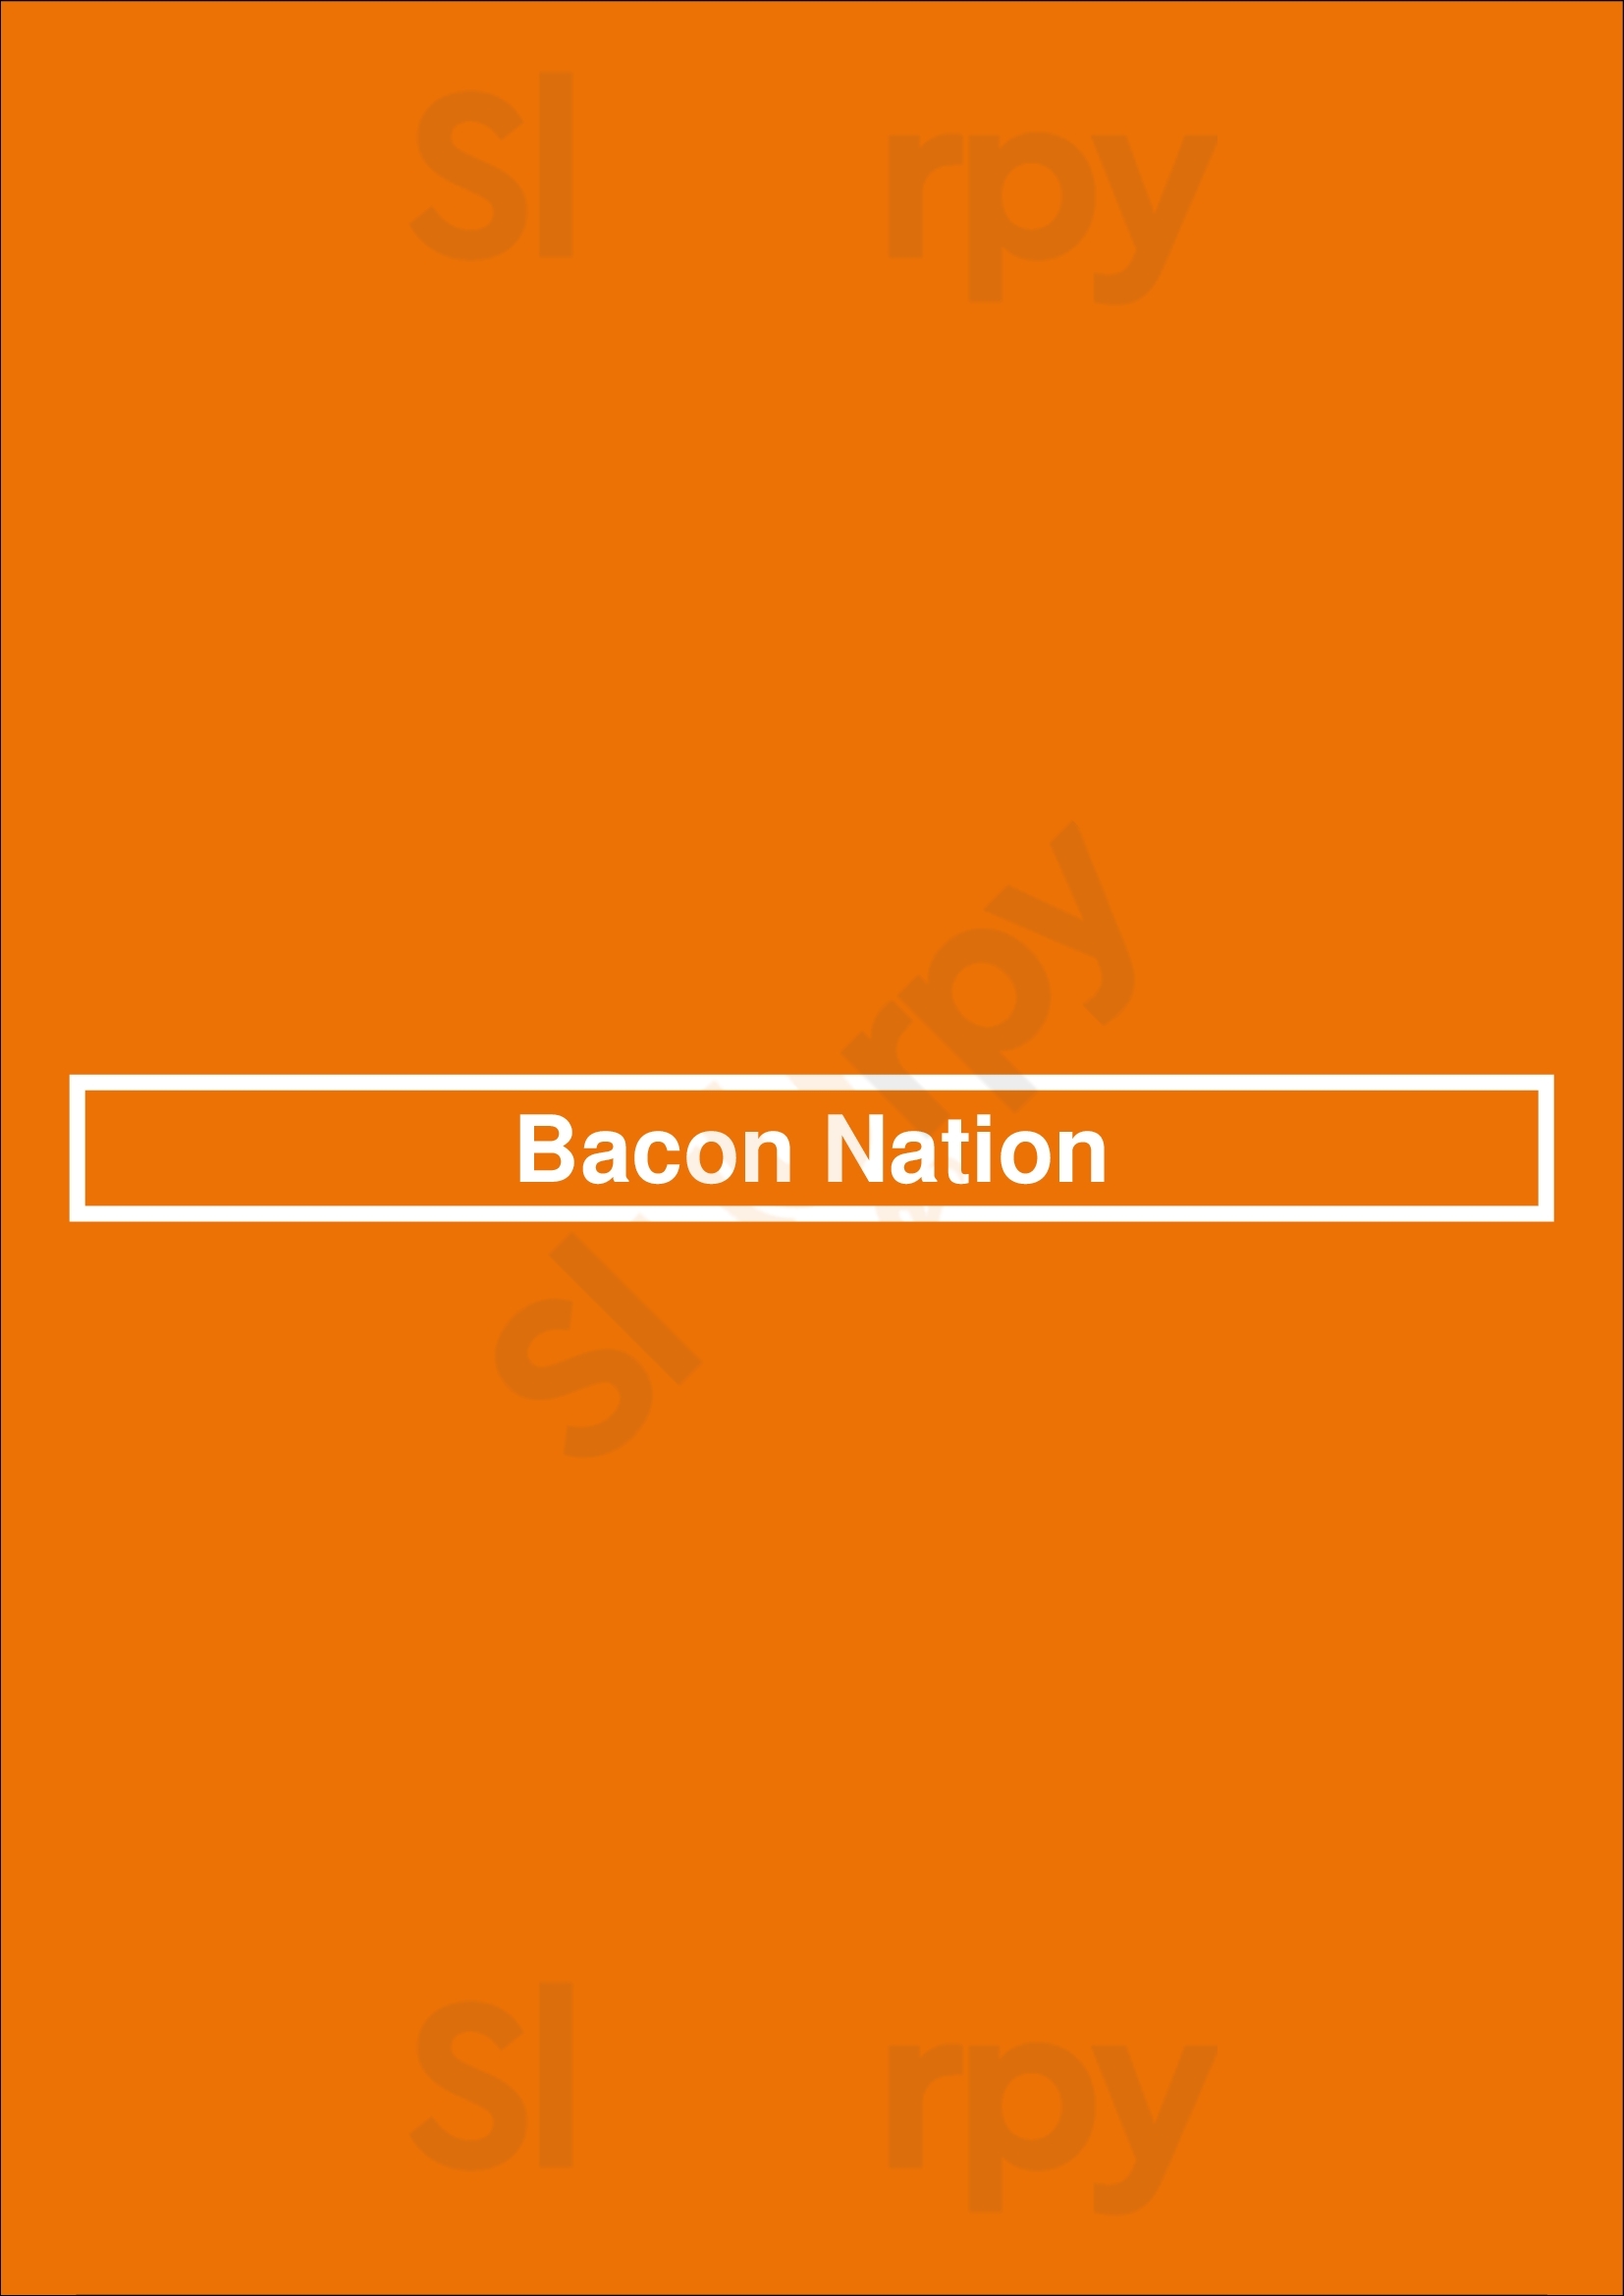 Bacon Nation Toronto Menu - 1